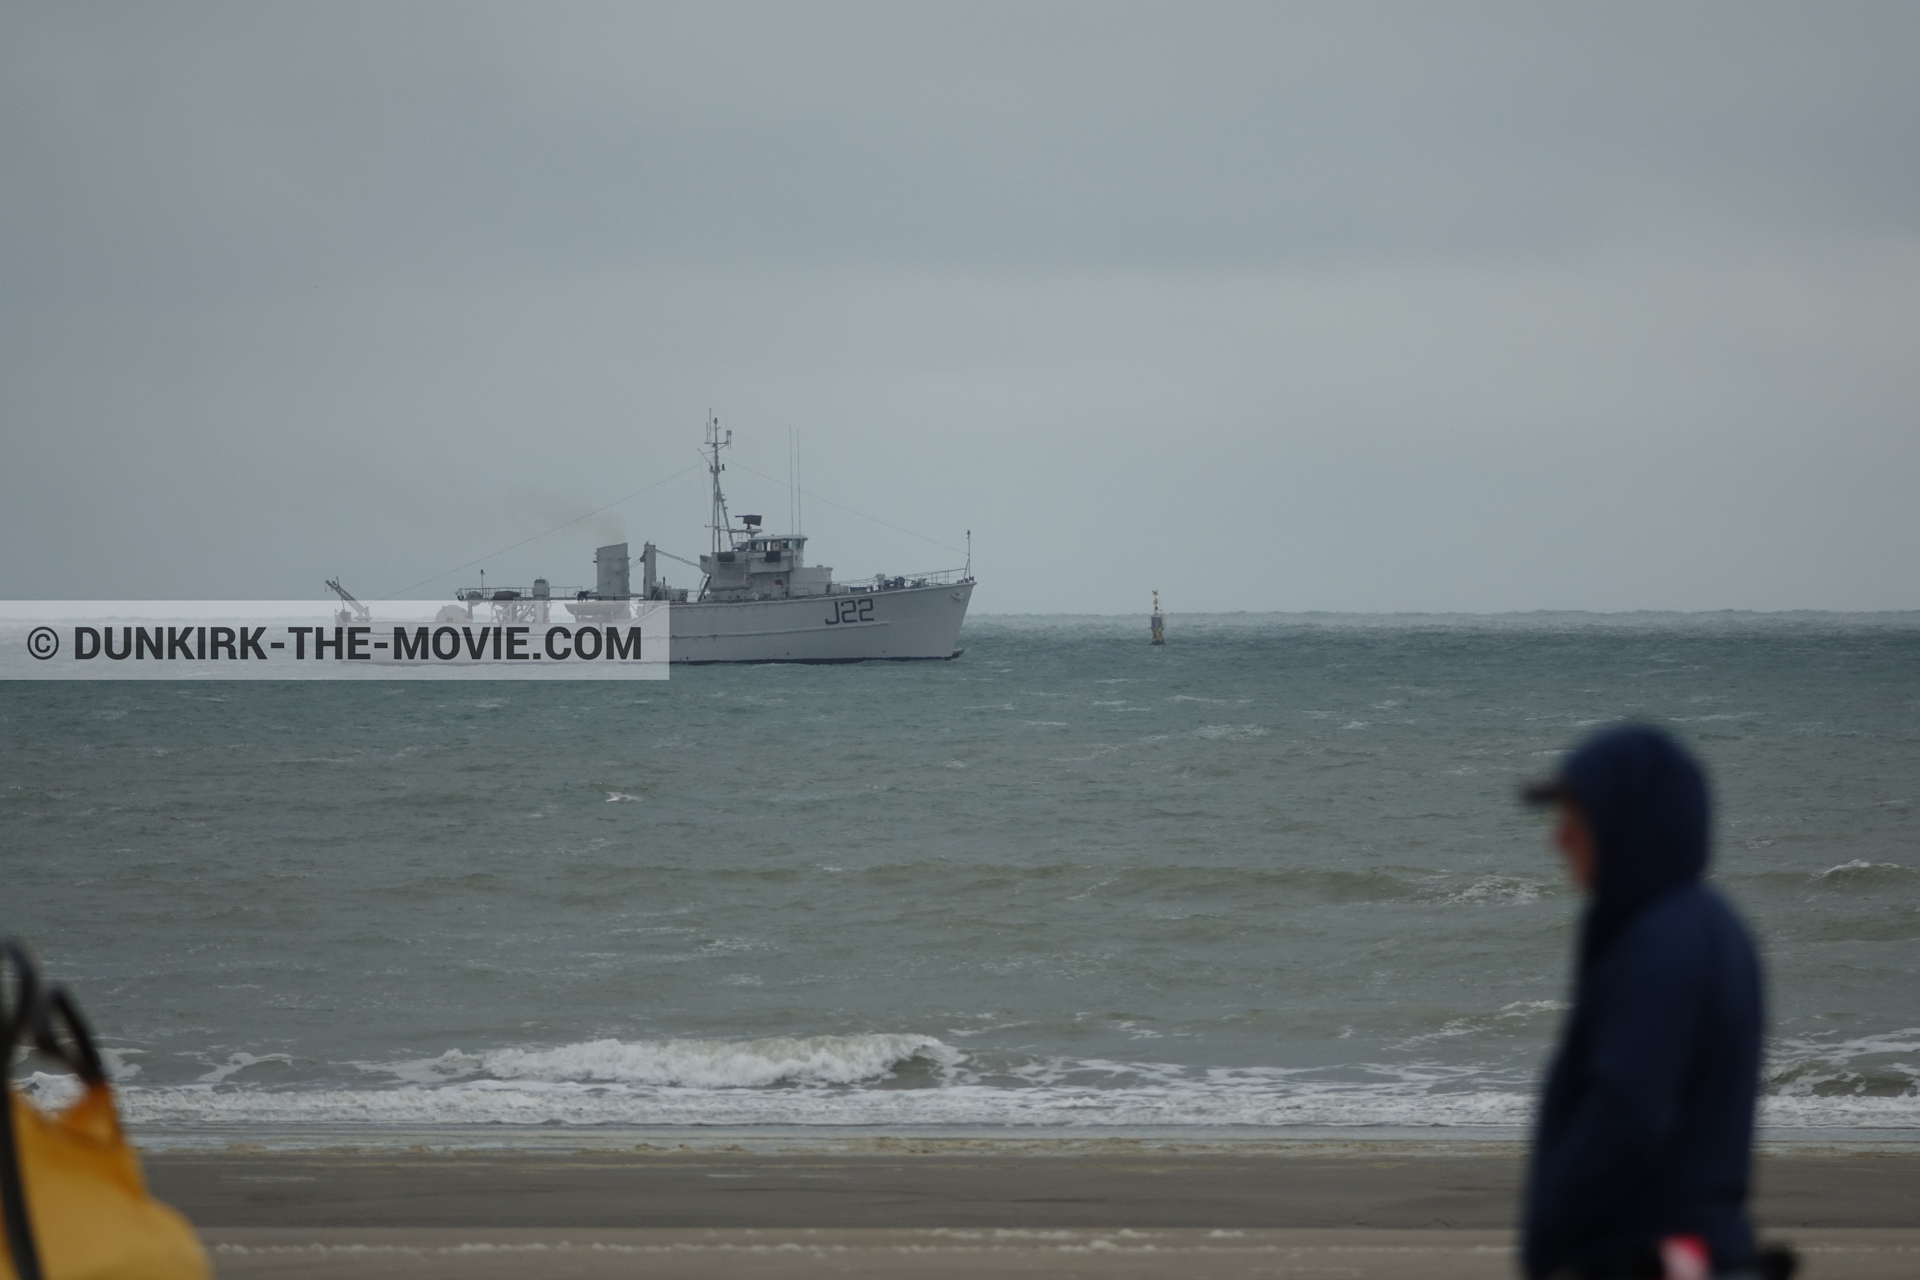 Fotos con barco, J22 -Hr.Ms. Naaldwijk, playa, equipo técnica,  durante el rodaje de la película Dunkerque de Nolan